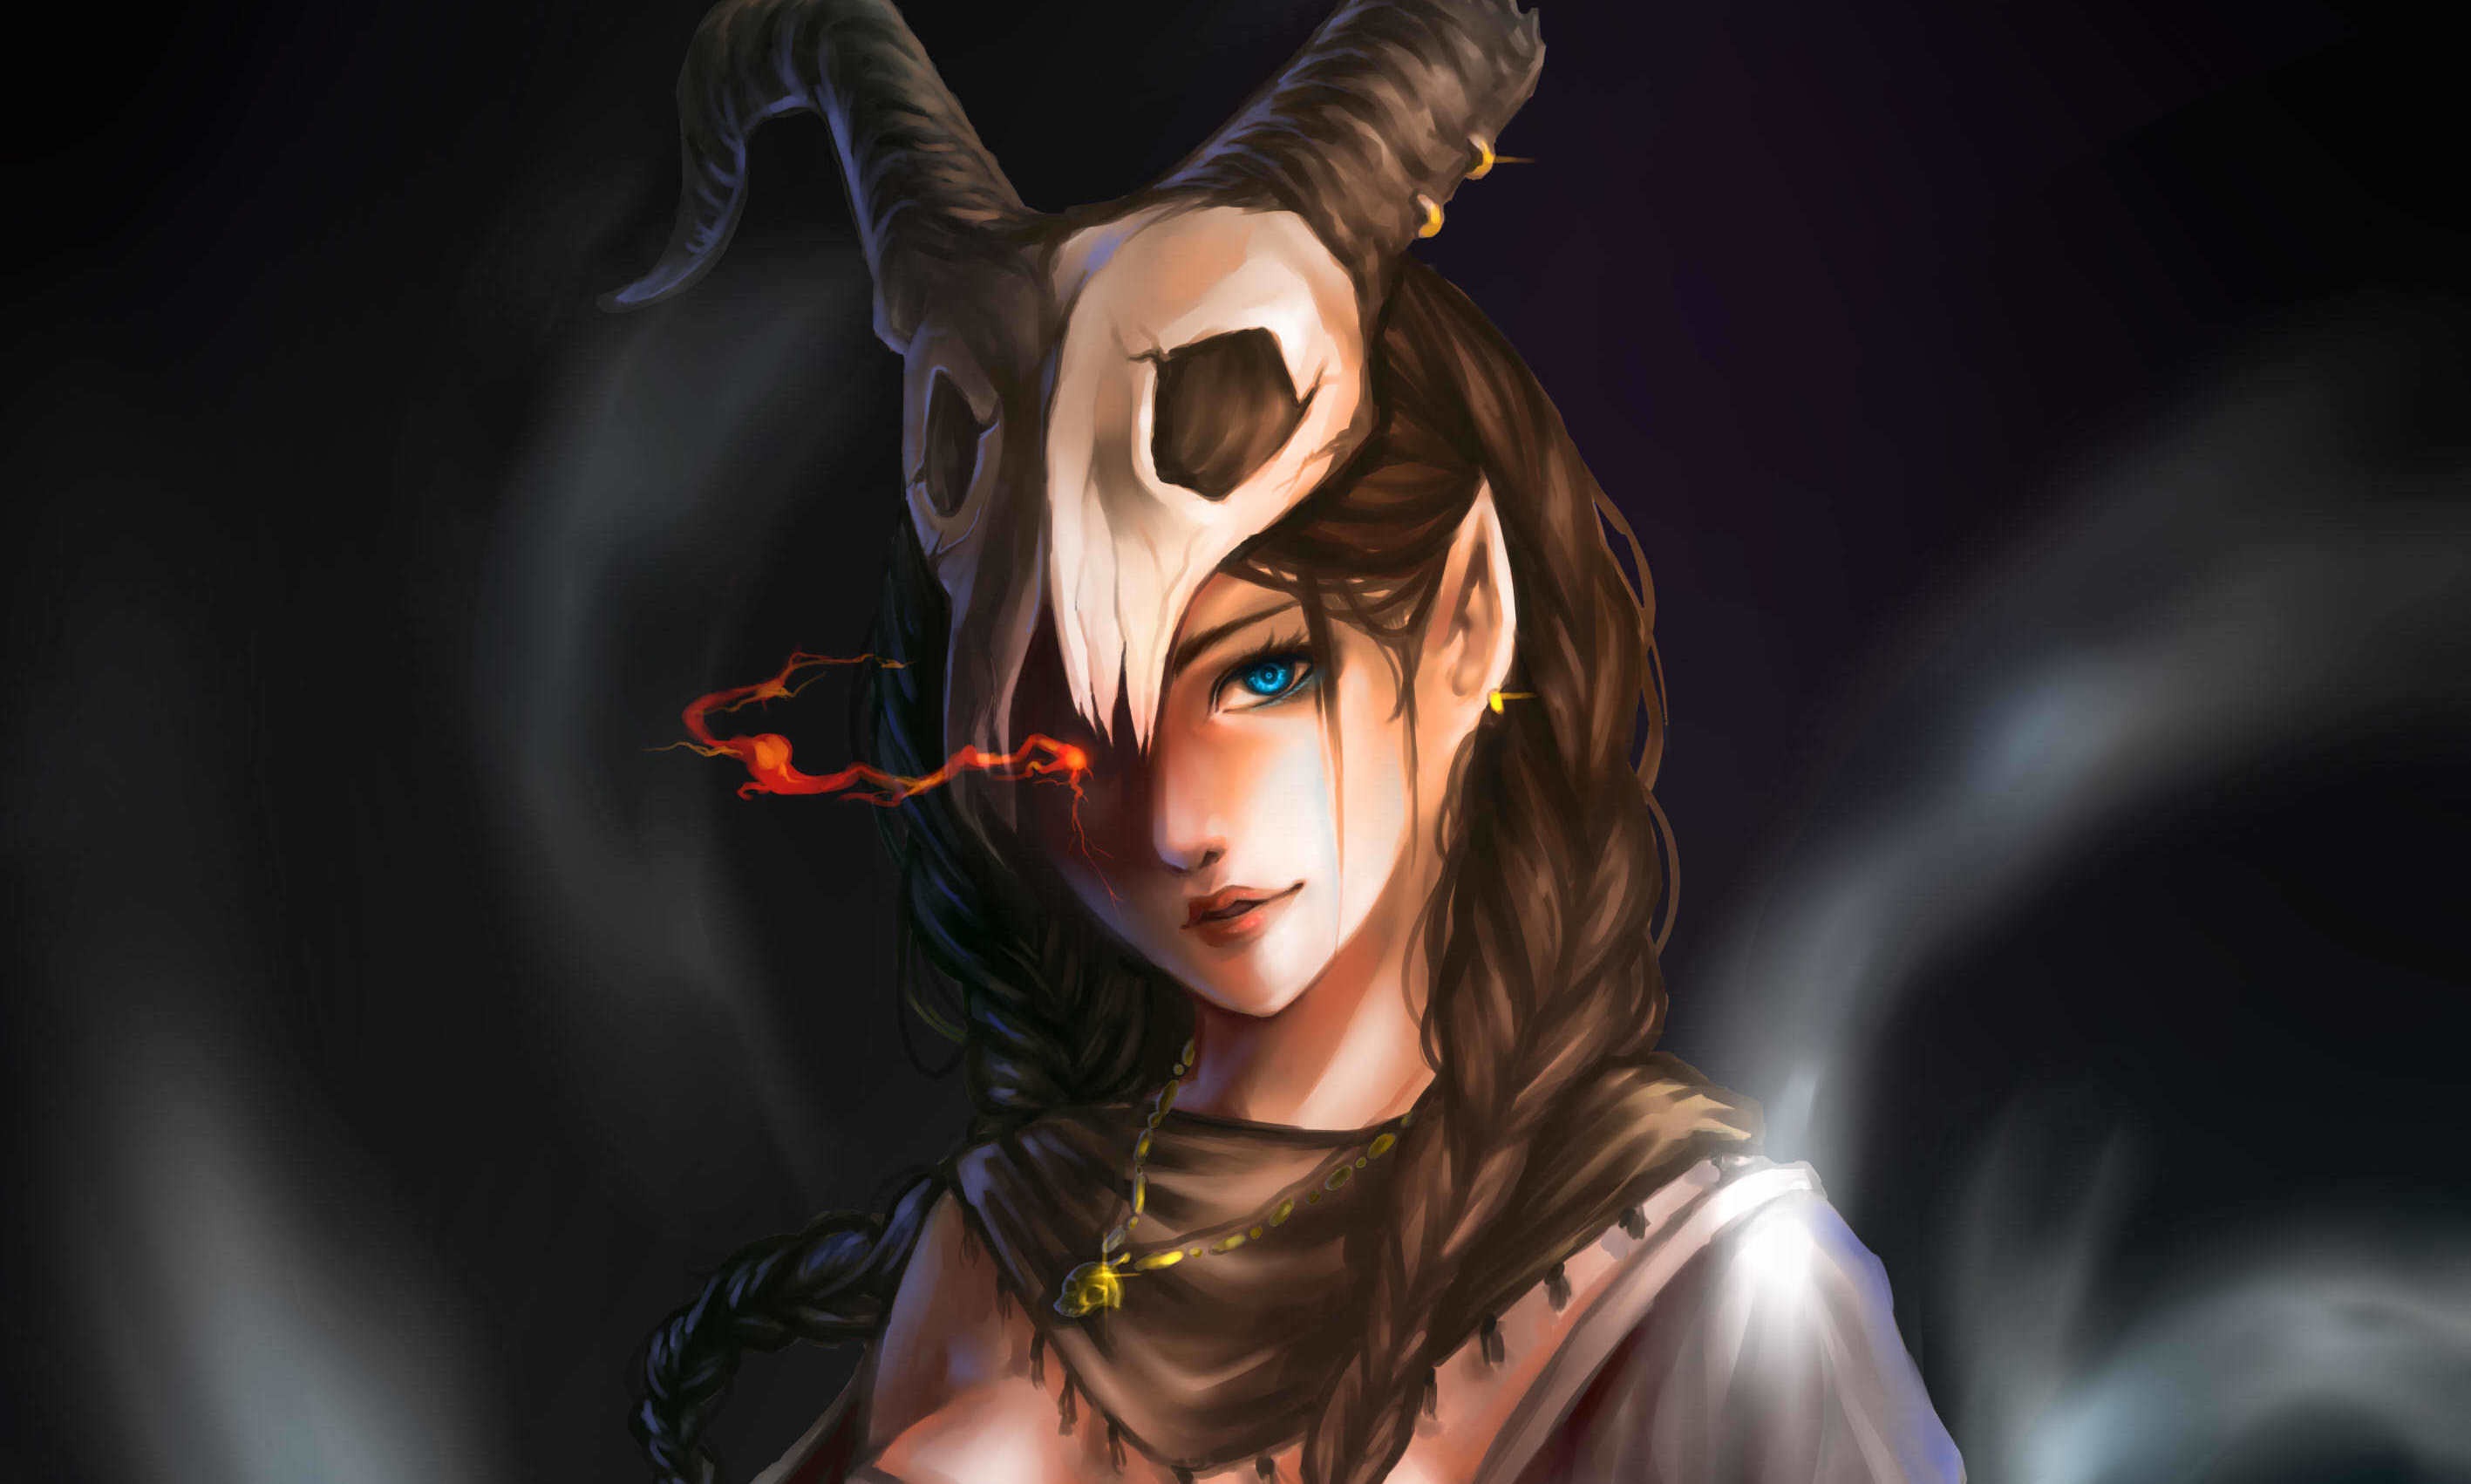 Elves Women Pointed Ears Skull Horns Blue Eyes Magic Pendant Artwork Fantasy Art Fantasy Girl 2834x1702